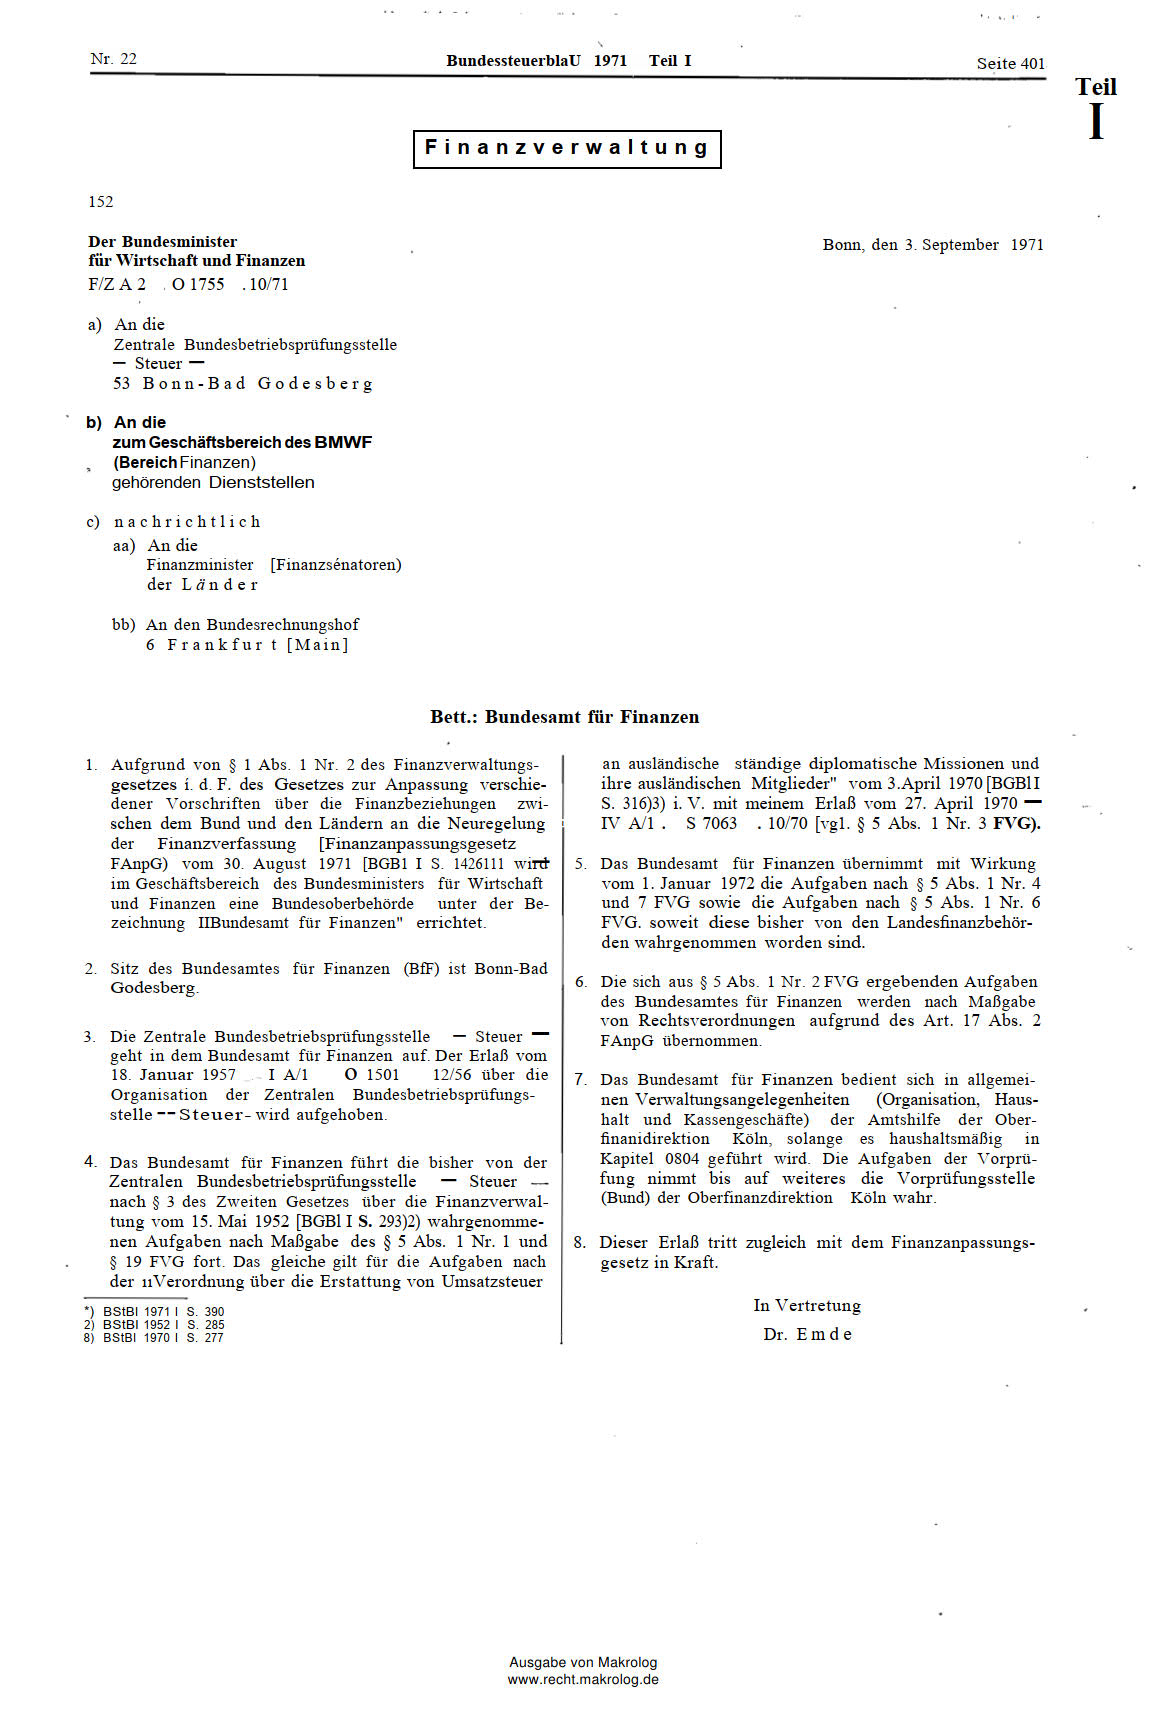 Erlass vom 3. September 1977 zur Gründung des Bundesamt für Finanzen